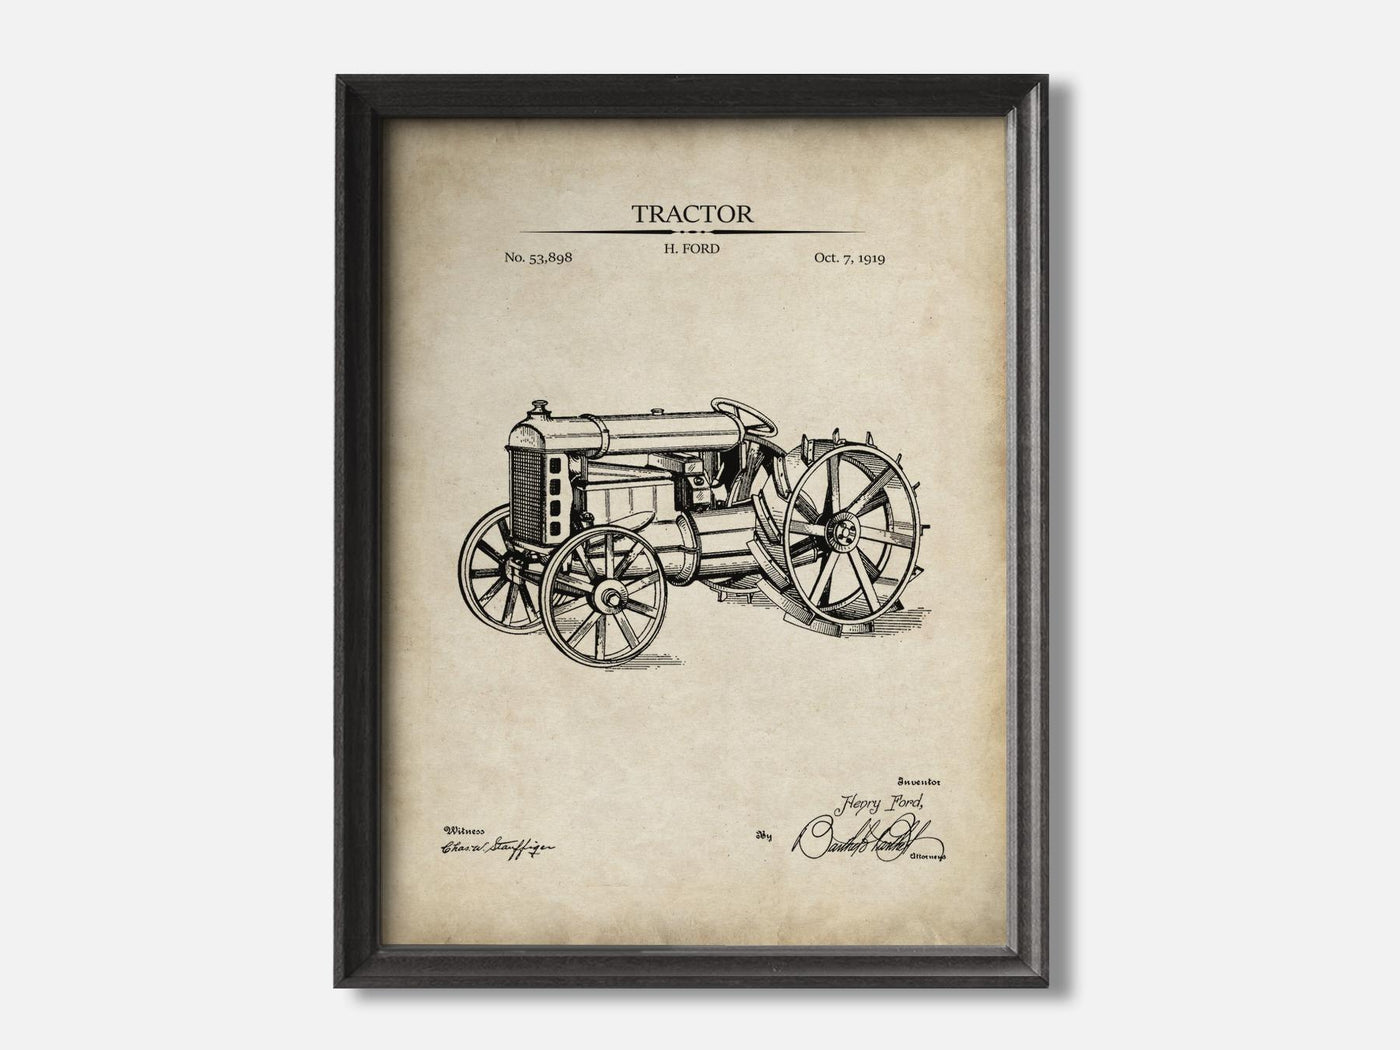 Tractor Patent Print mockup - A_t10025.3-V1-PC_F+B-SS_1-PS_5x7-C_par variant